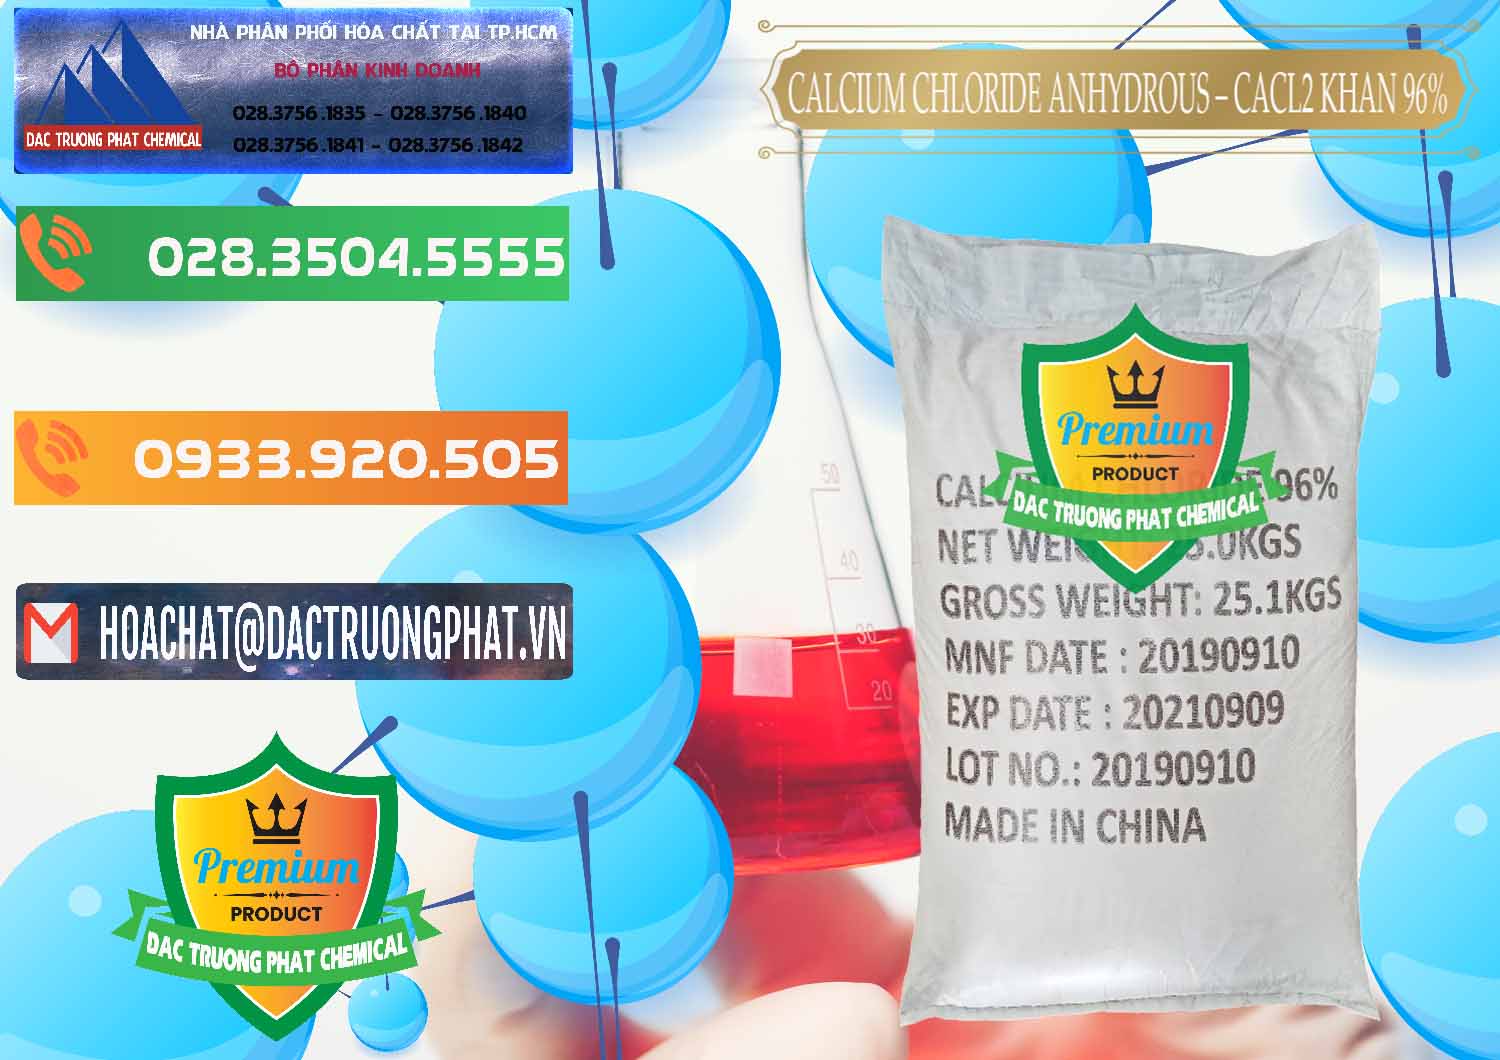 Cty chuyên cung ứng & bán CaCl2 – Canxi Clorua Anhydrous Khan 96% Trung Quốc China - 0043 - Công ty phân phối - cung cấp hóa chất tại TP.HCM - hoachatxulynuoc.com.vn